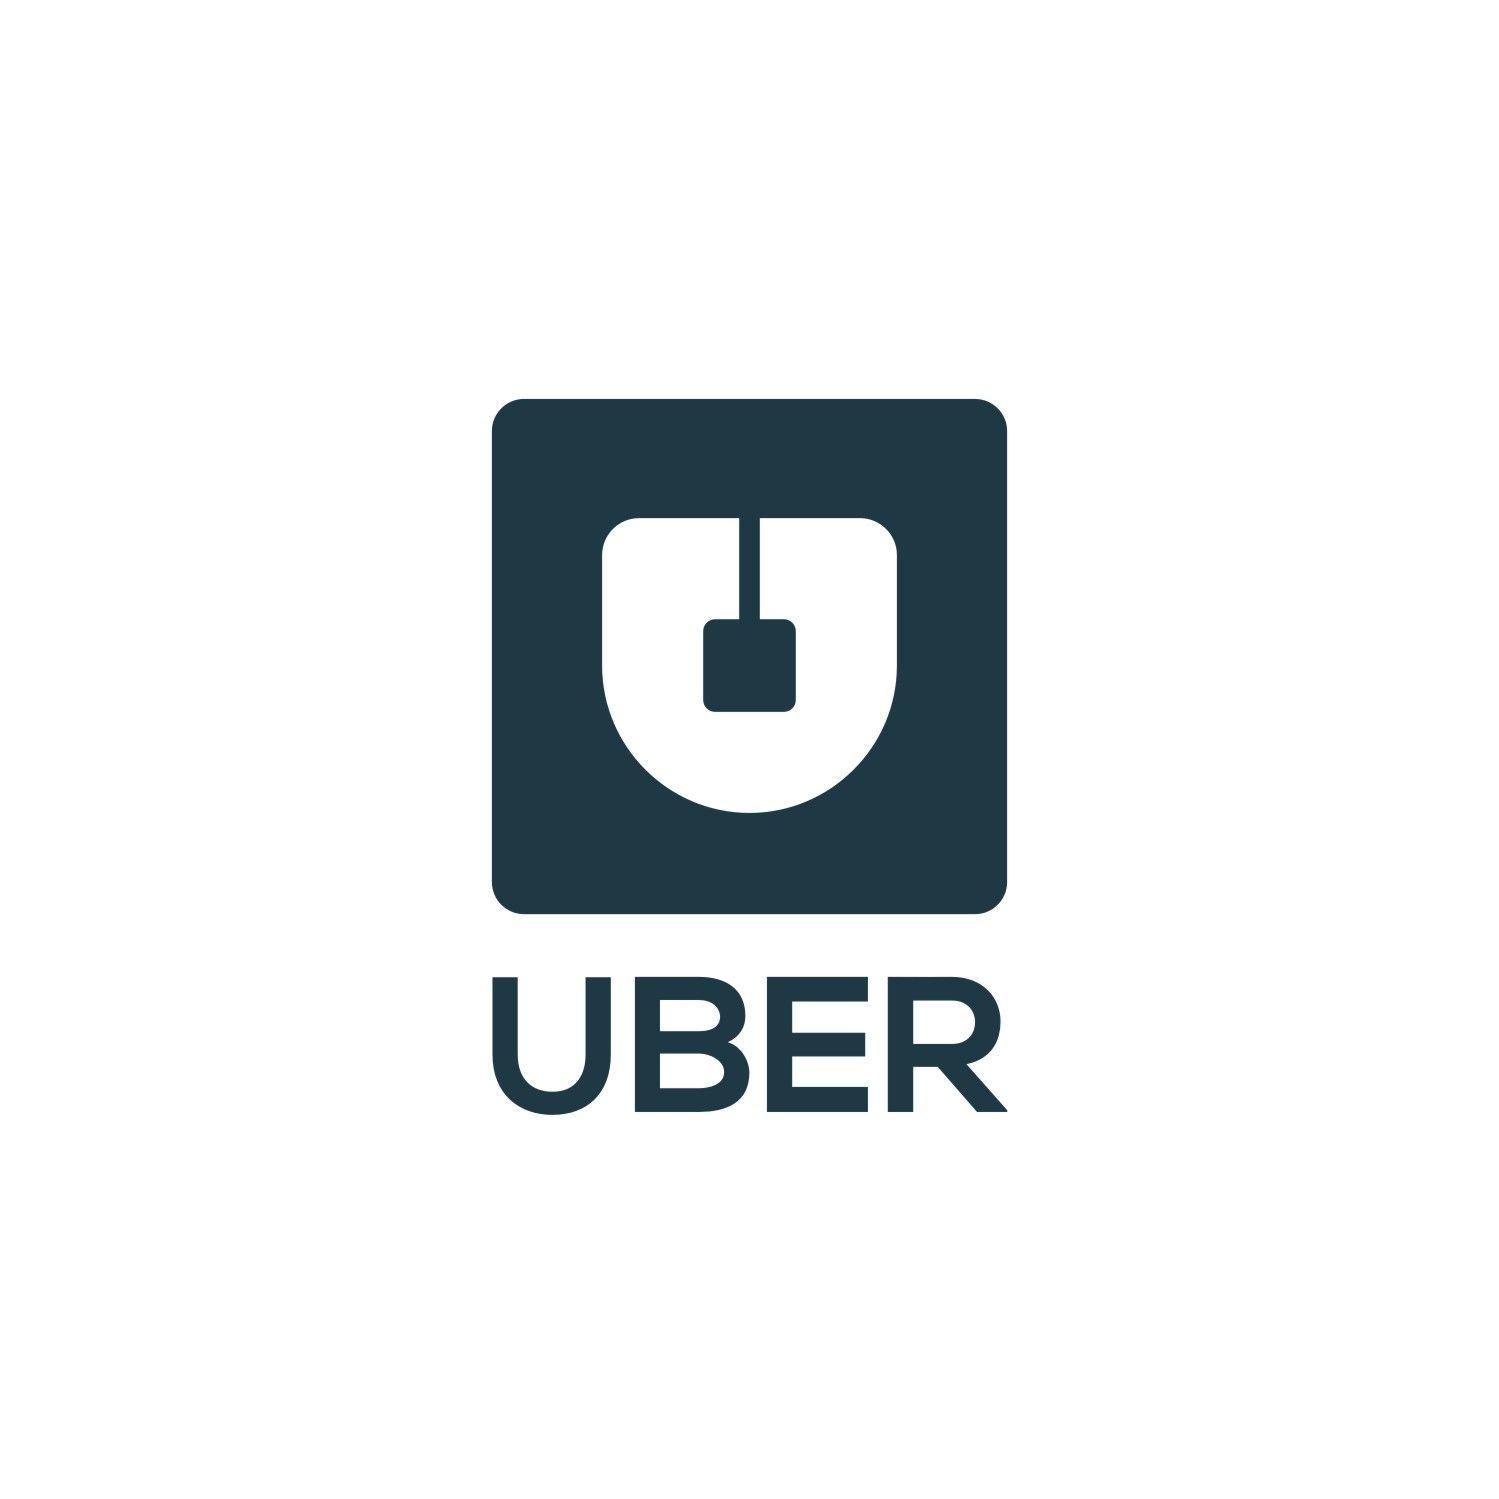 Uber New Logo - Design an unoffical logo for ride share app Uber | $1000 DesignCrowd ...